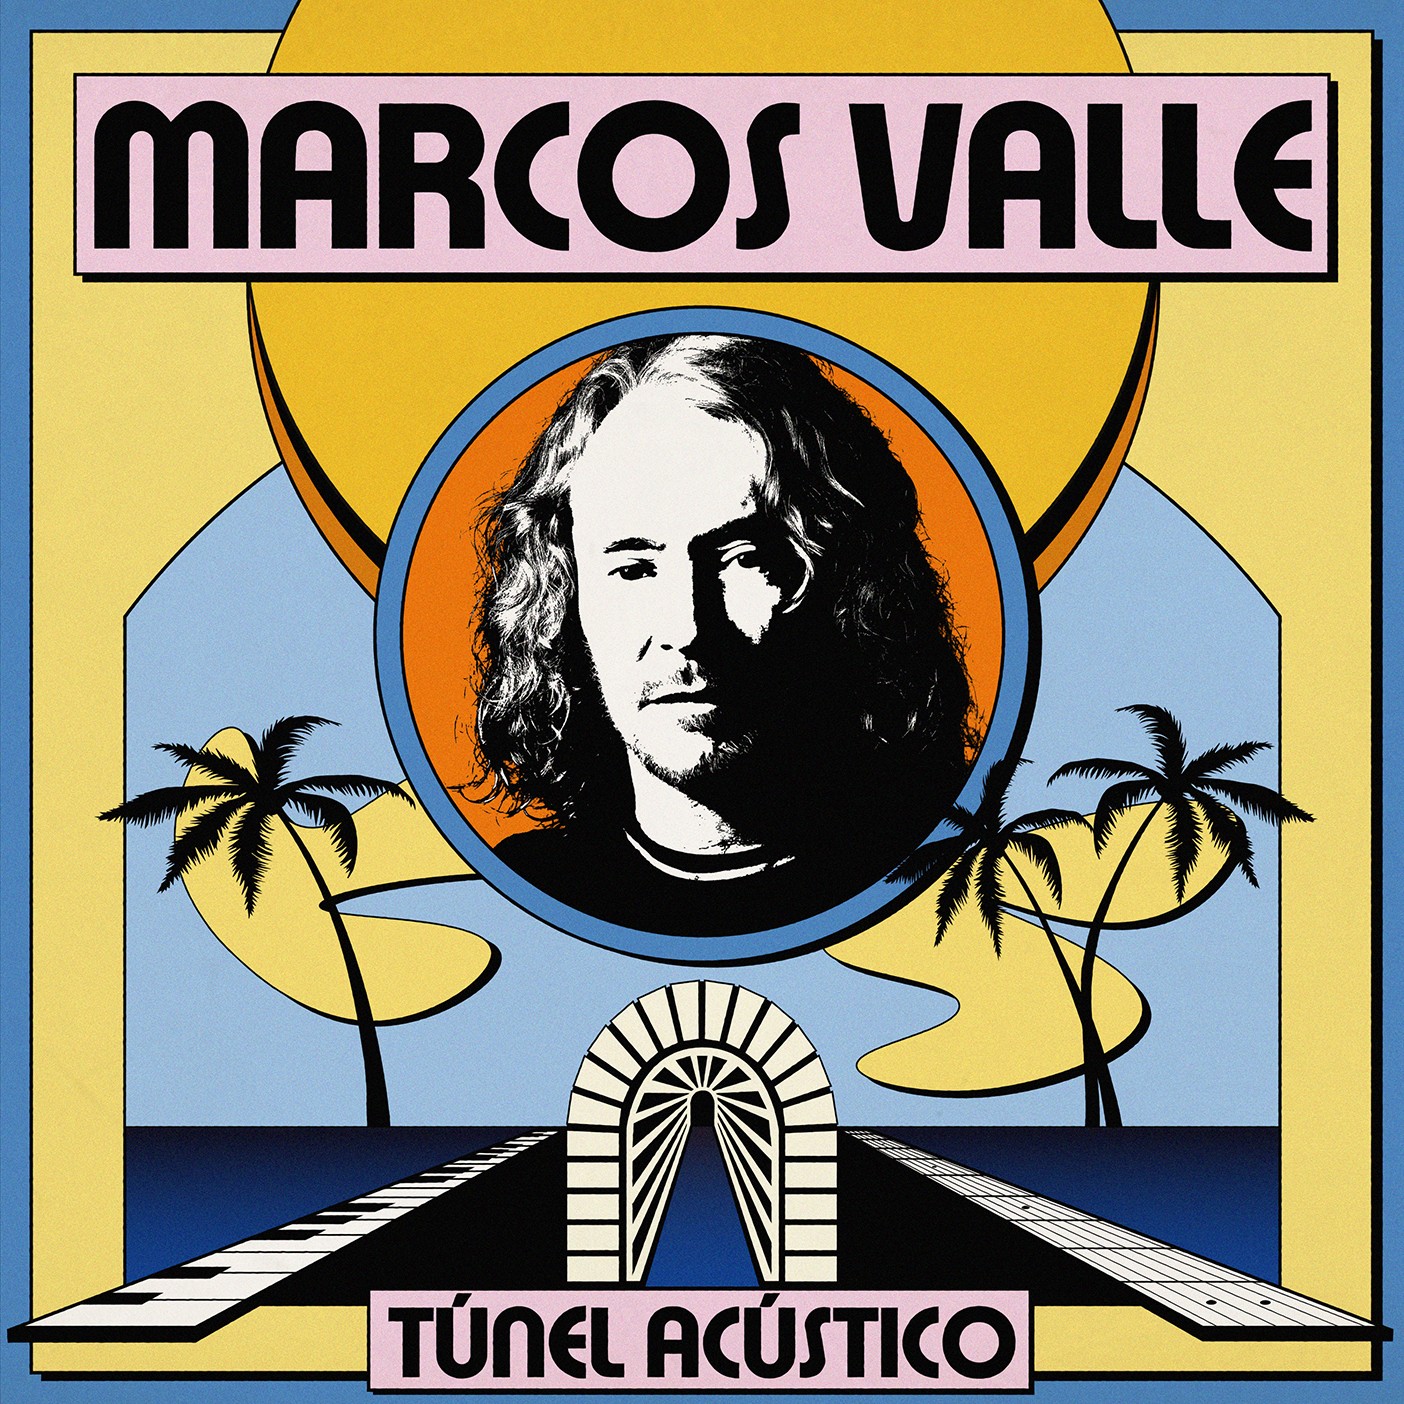 Aos 80 anos, Marcos Valle atravessa ‘Túnel acústico’ com luz do samba de verão em álbum pautado pelo groove